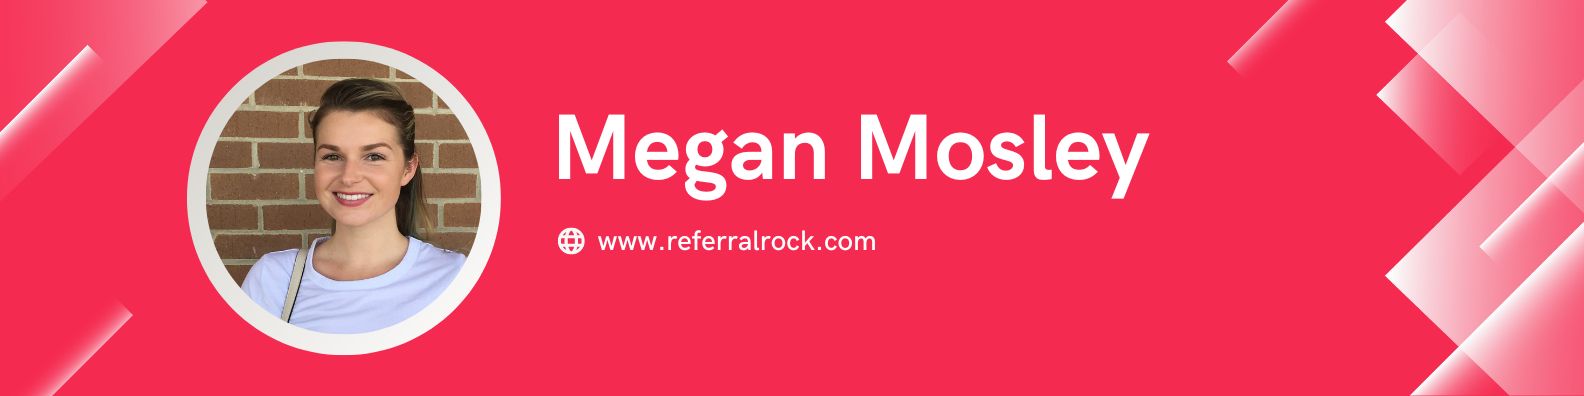 Megan Mosley